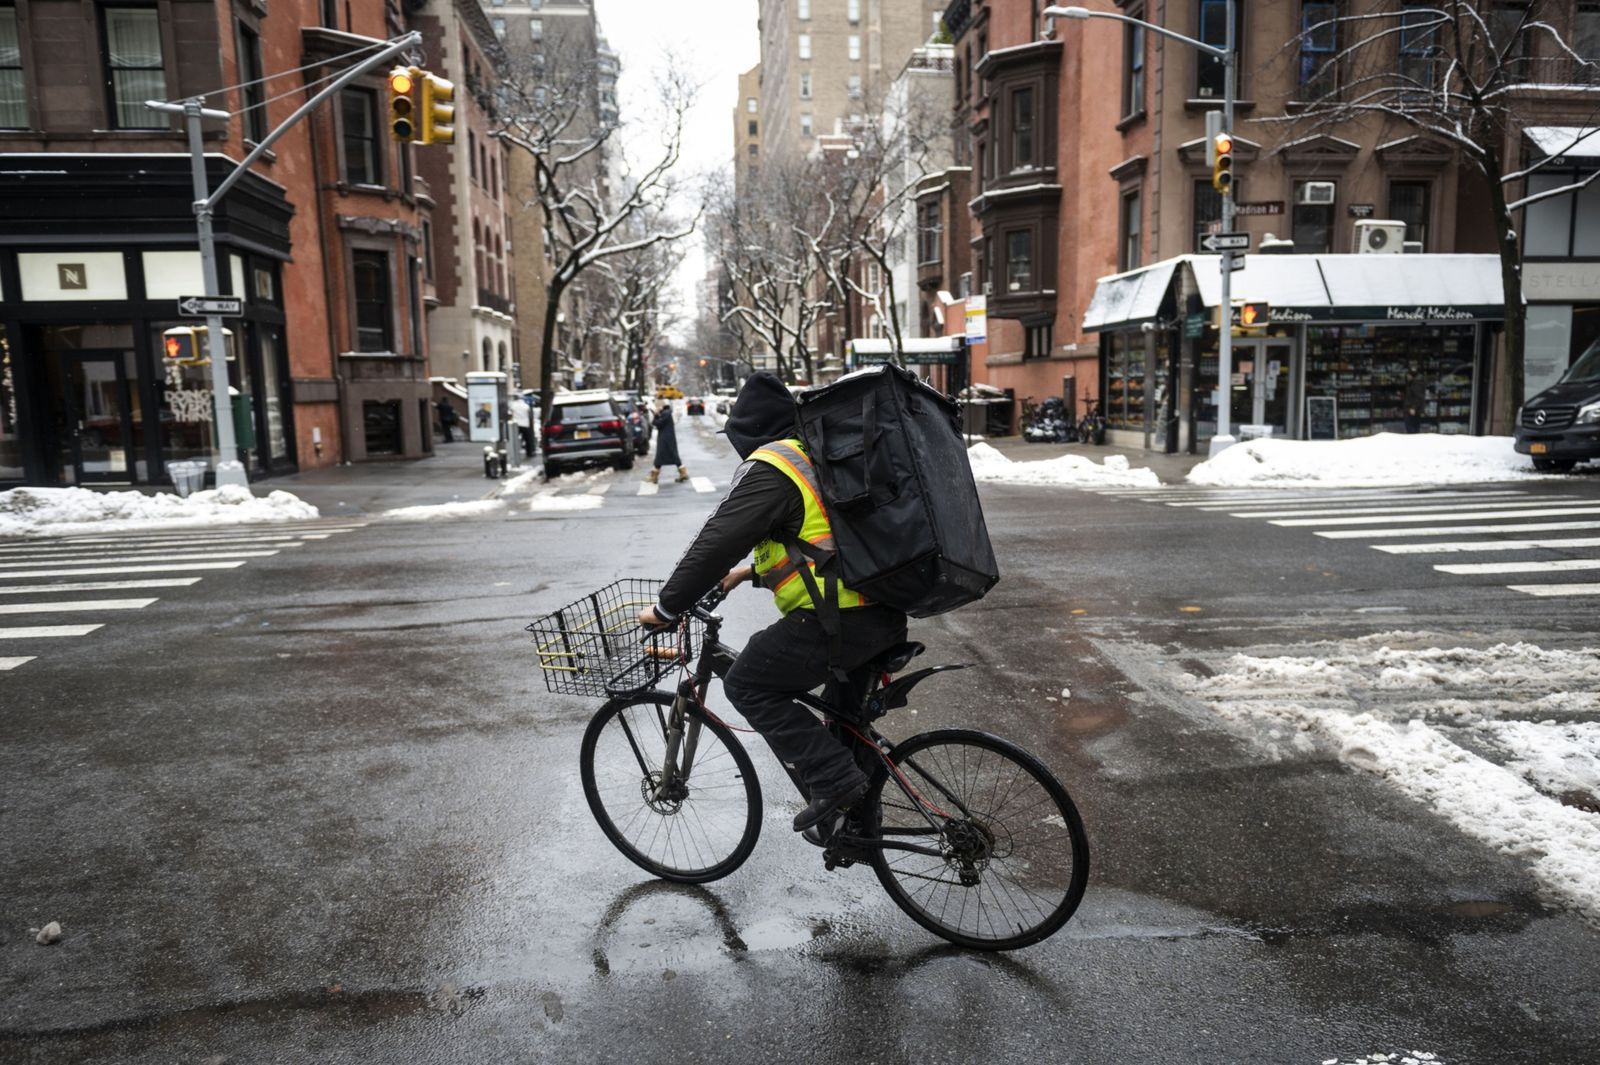 عامل في توصيل الطعام يستقلّ دراجة خلال عاصفة في نيويورك - 19 فبراير 2021 - Bloomberg